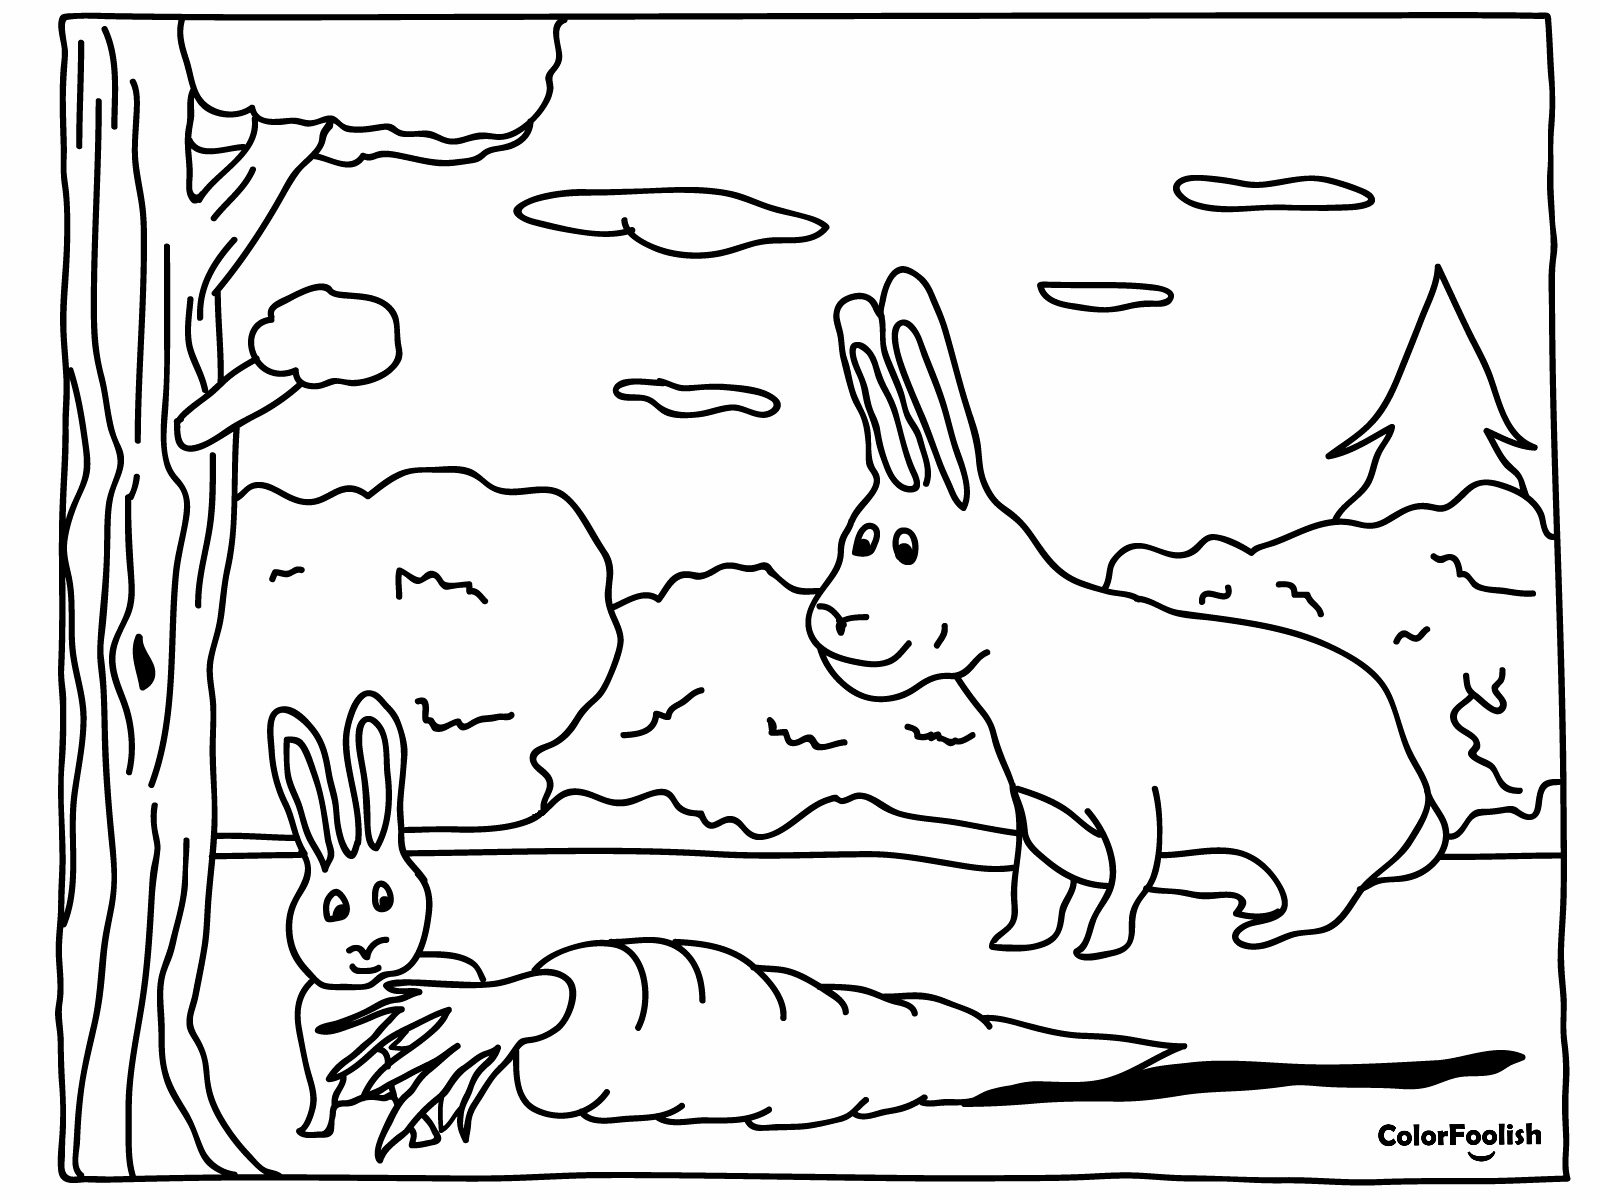 Dibujo para colorear de conejo bebé con una zanahoria muy grande